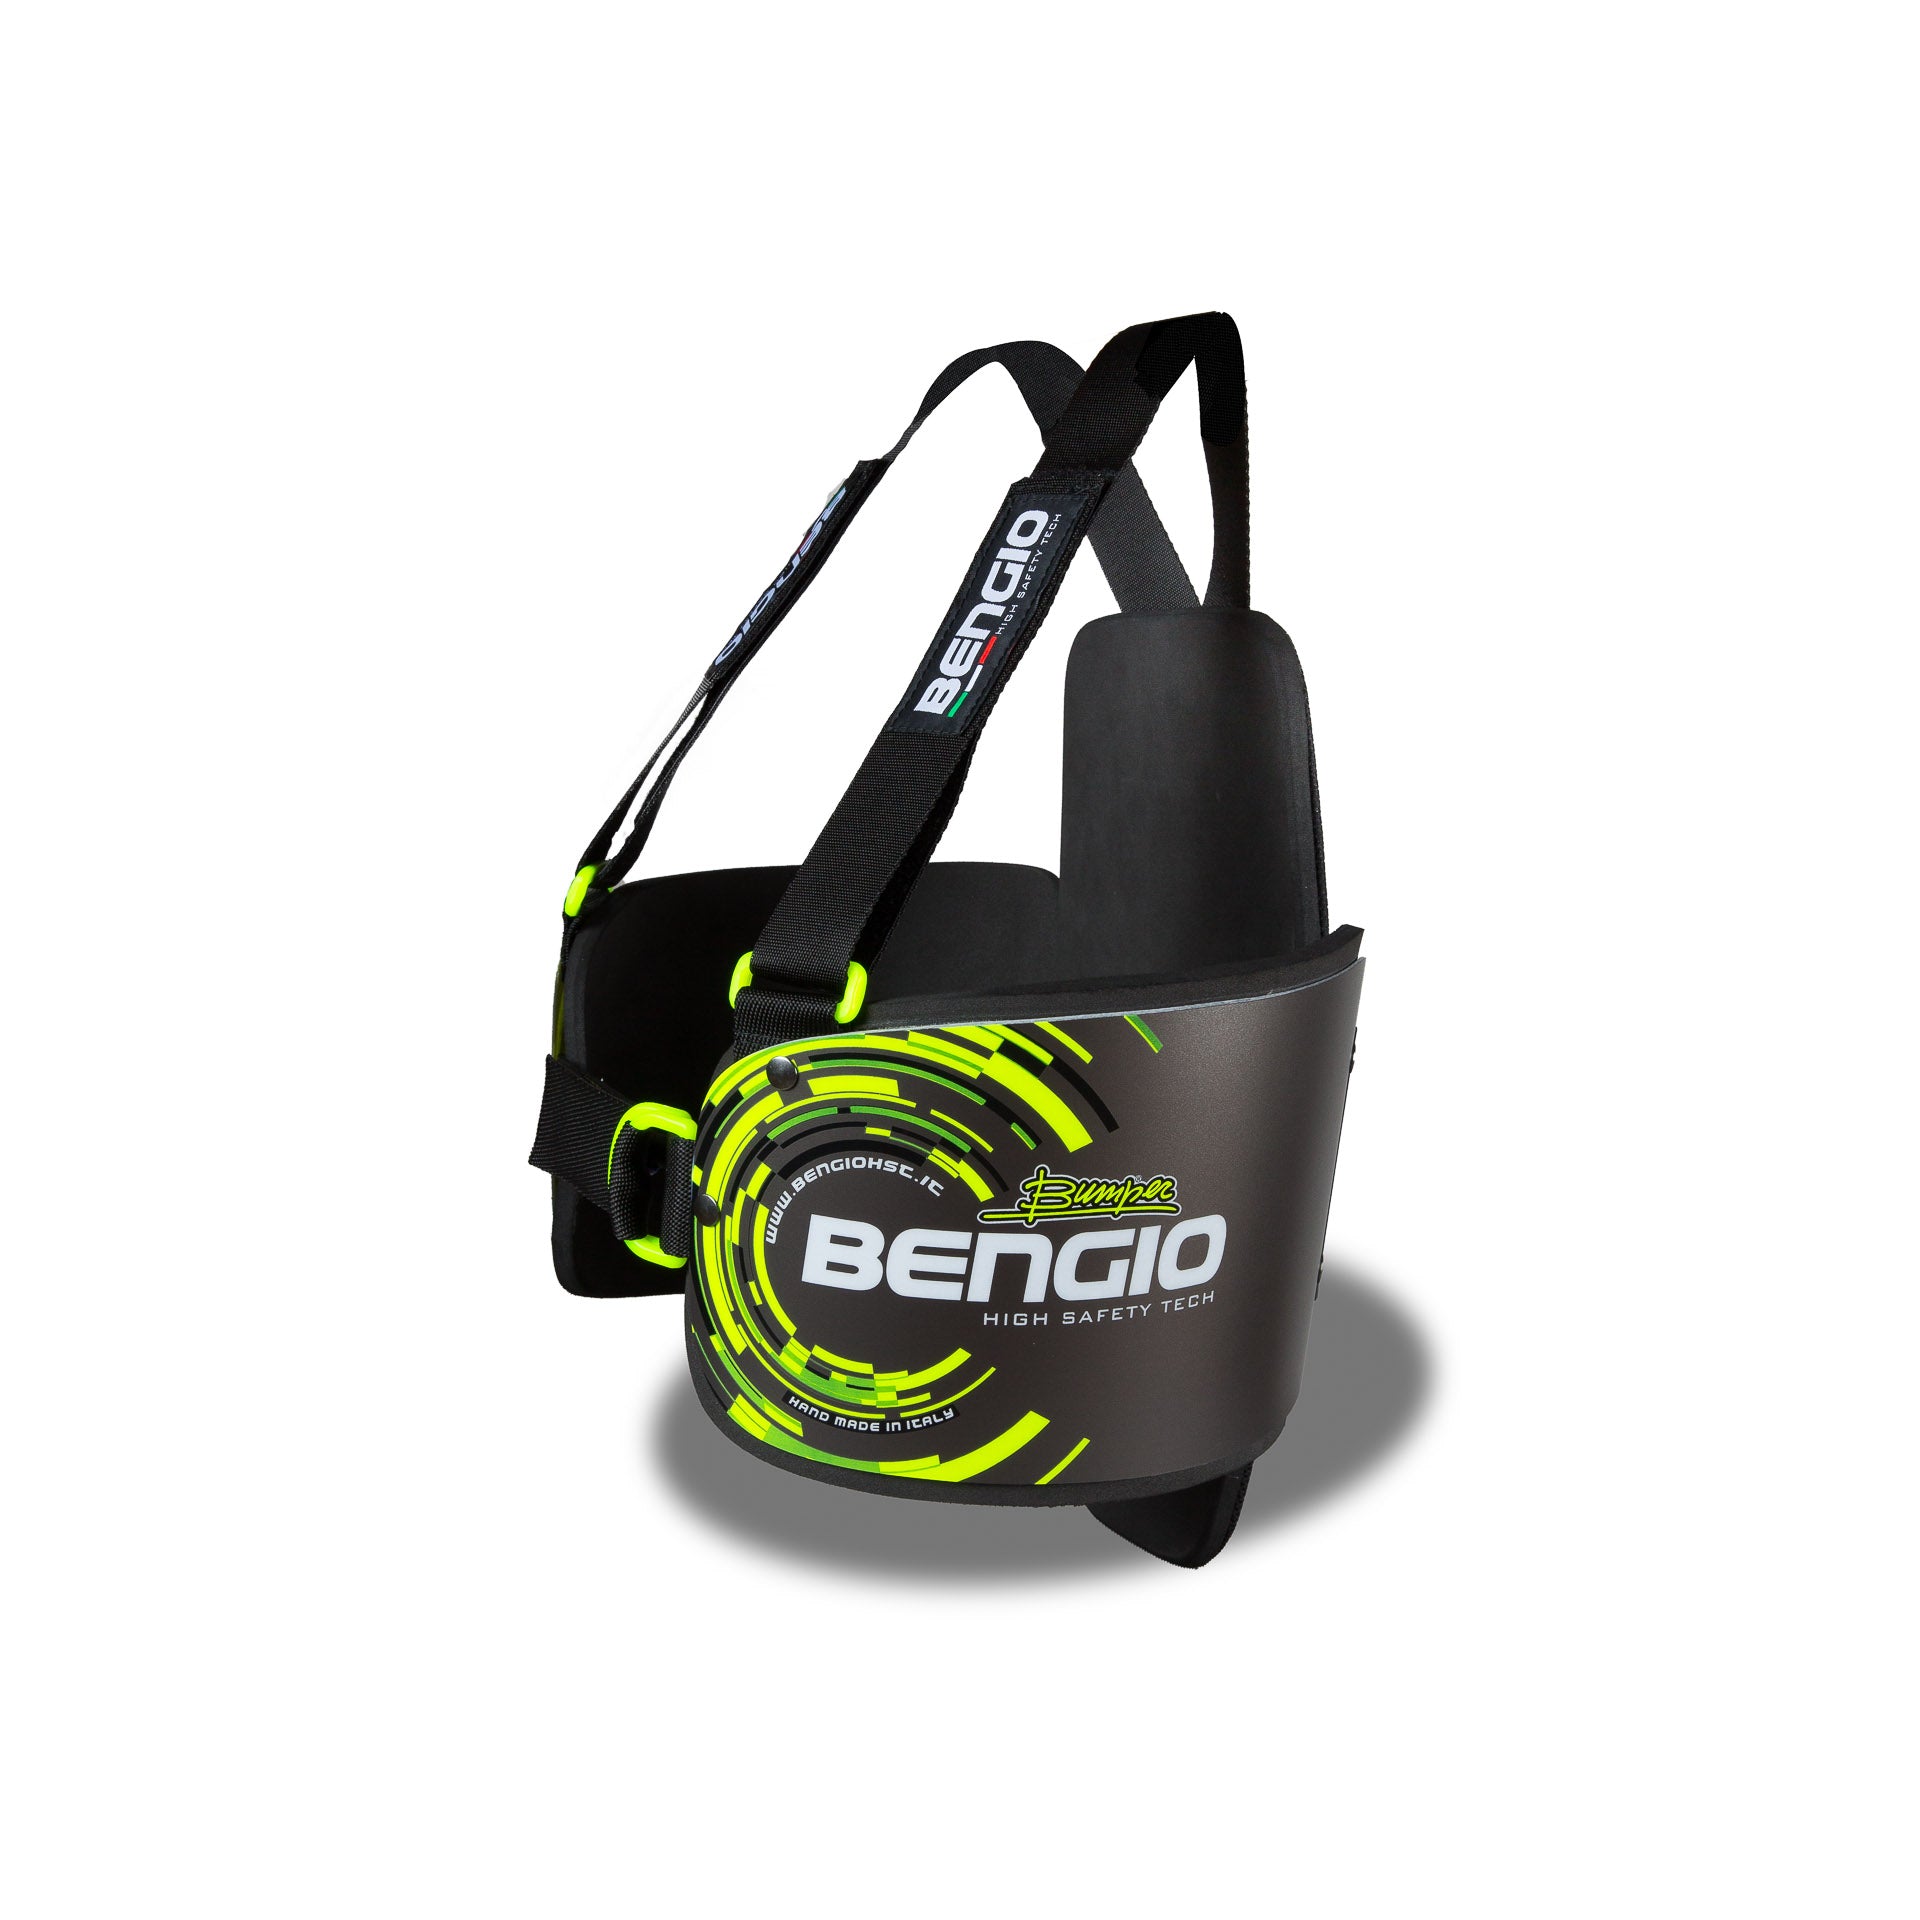 BENGIO STDPLXXSGY BUMPER Plus Захист ребер для картингу, сірий/флюор. жовтий, розмір XXS Photo-1 